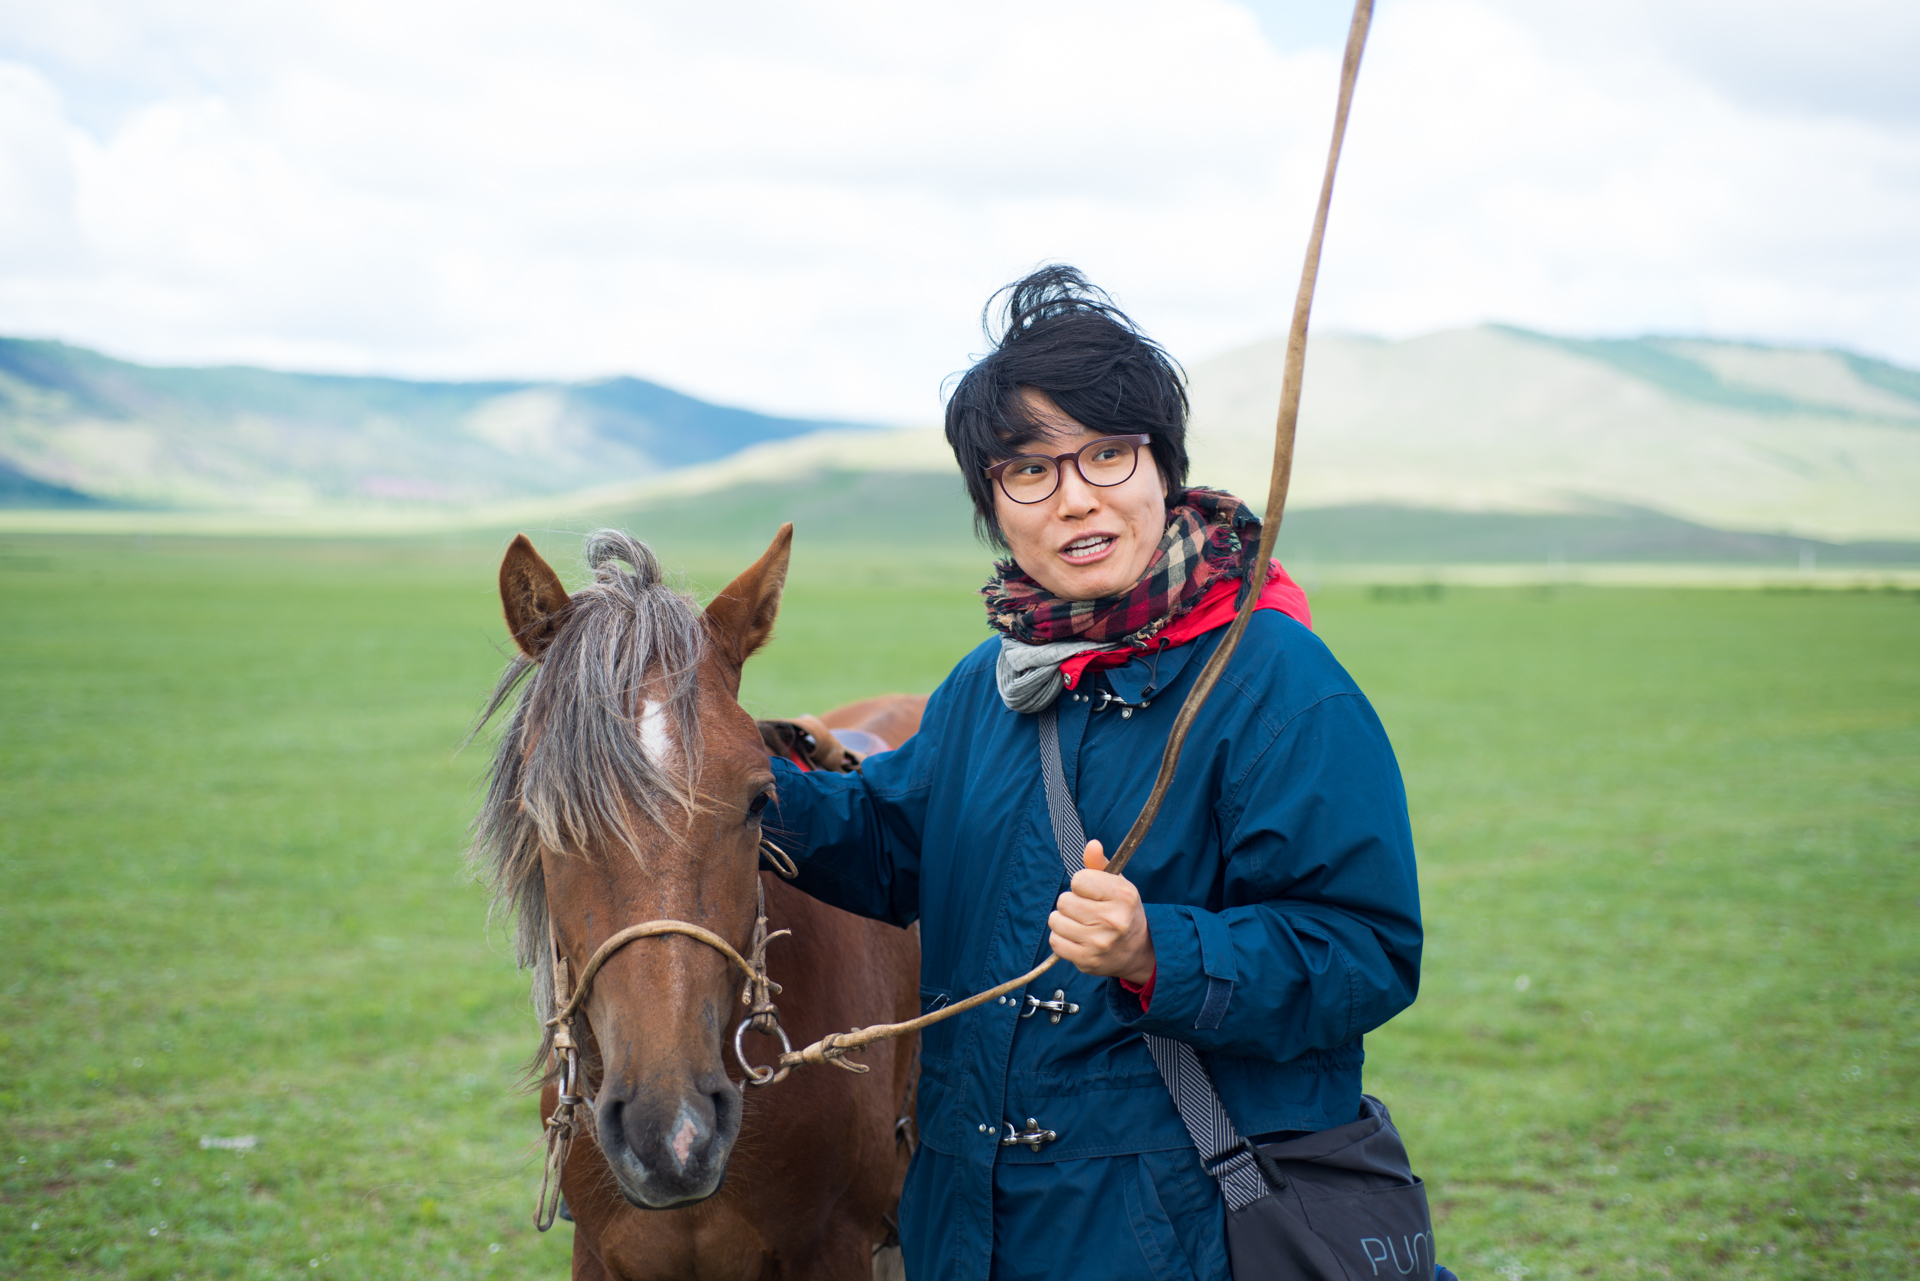 150802_472.jpg : 몽골 학습탐사 2진 사진 8월2일_1 ...자